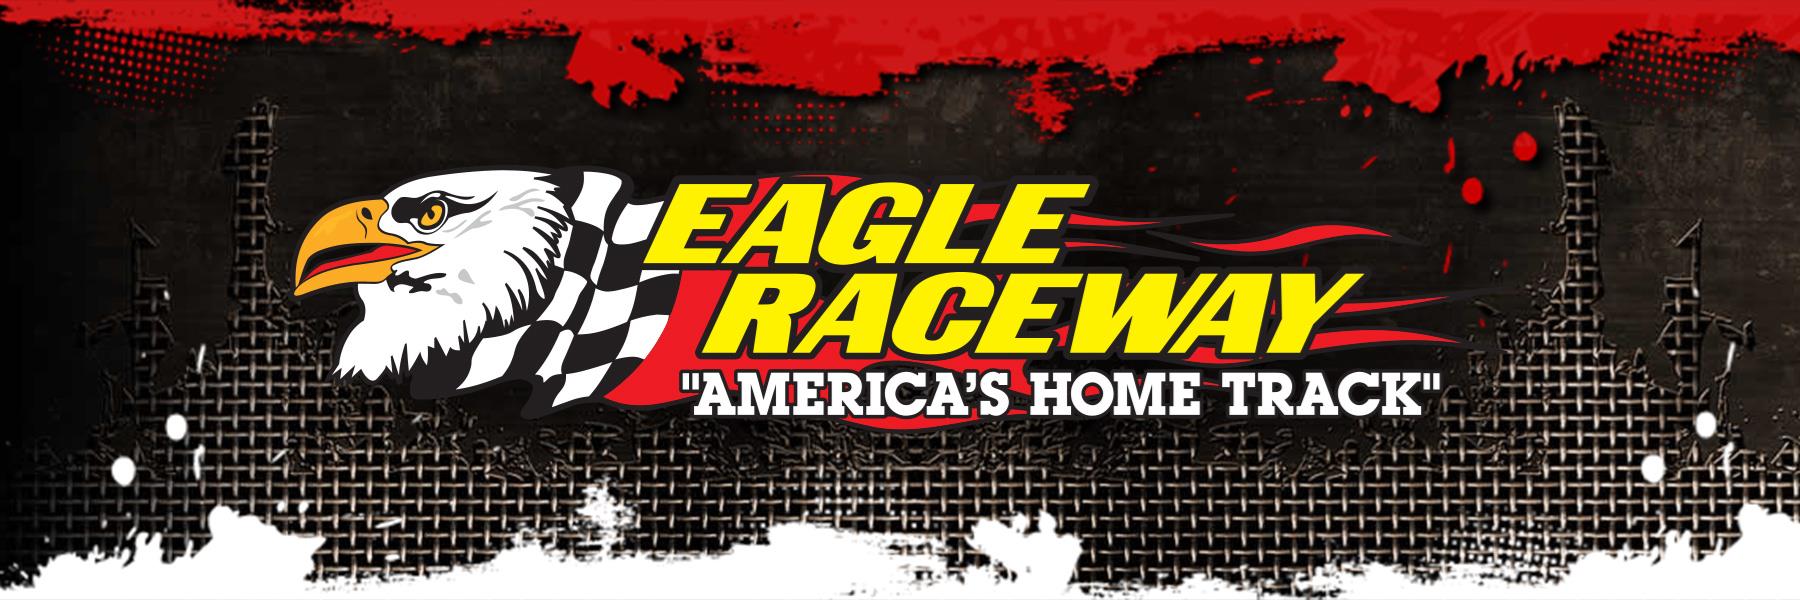 6/20/2020 - Eagle Raceway